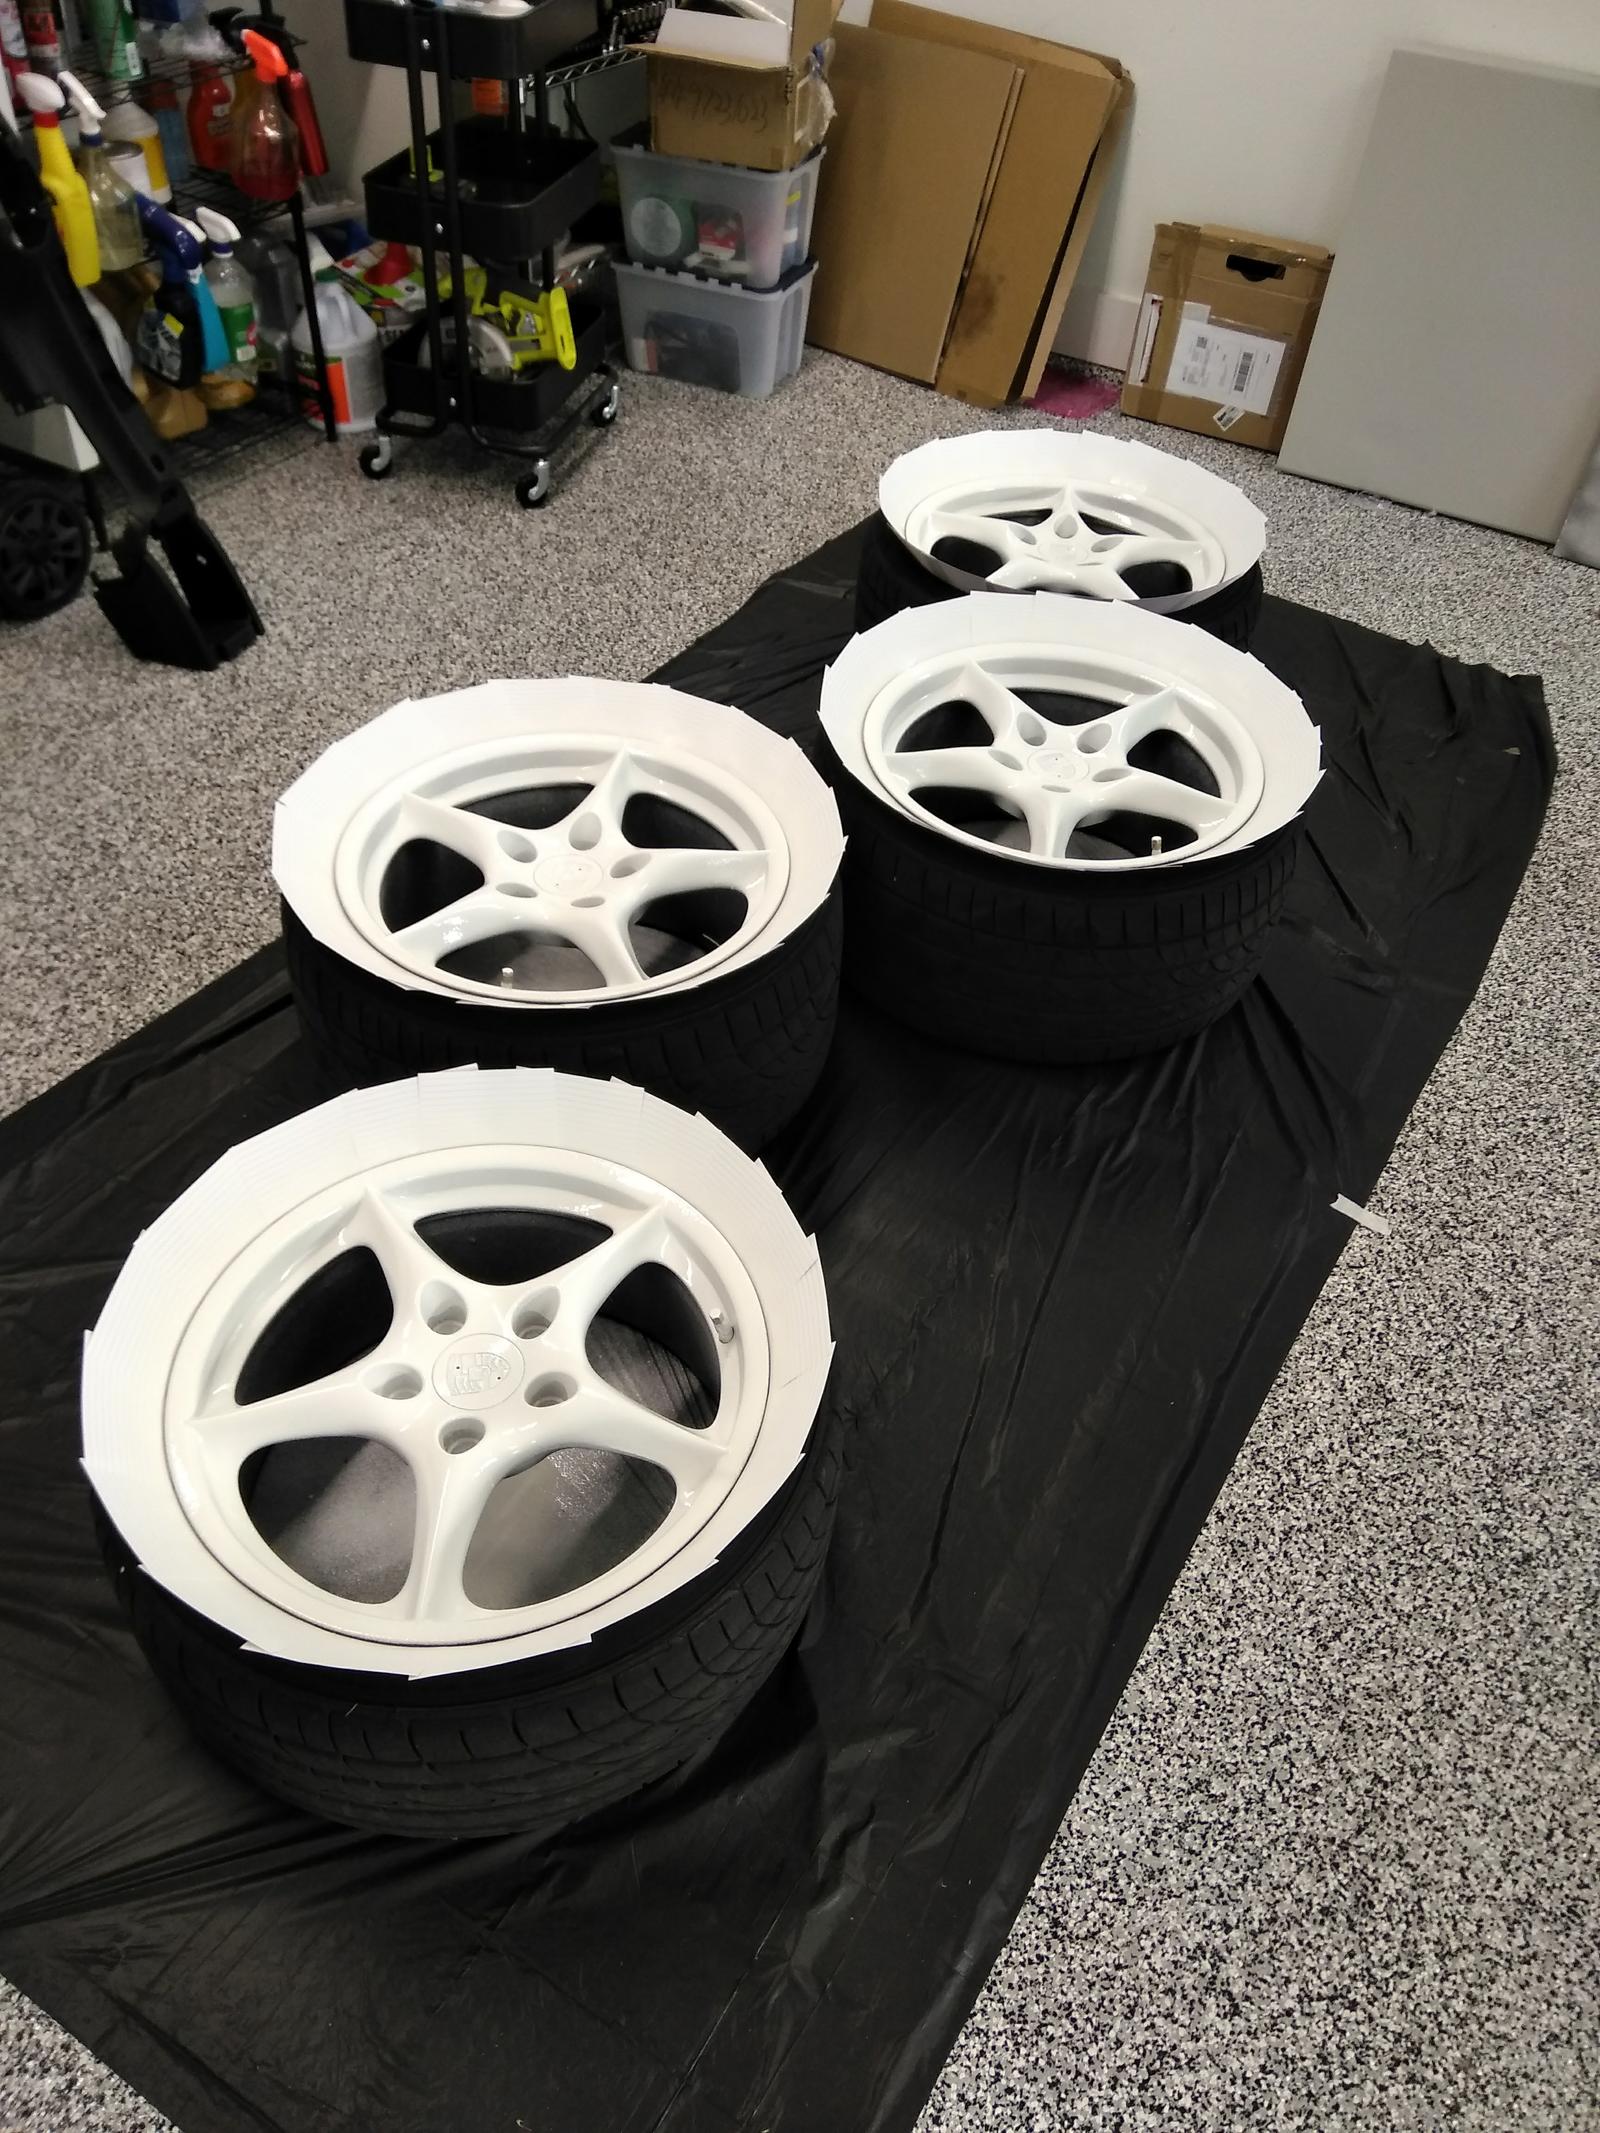 Plastidip 2.0? Colored my wheels - Rennlist - Porsche Discussion